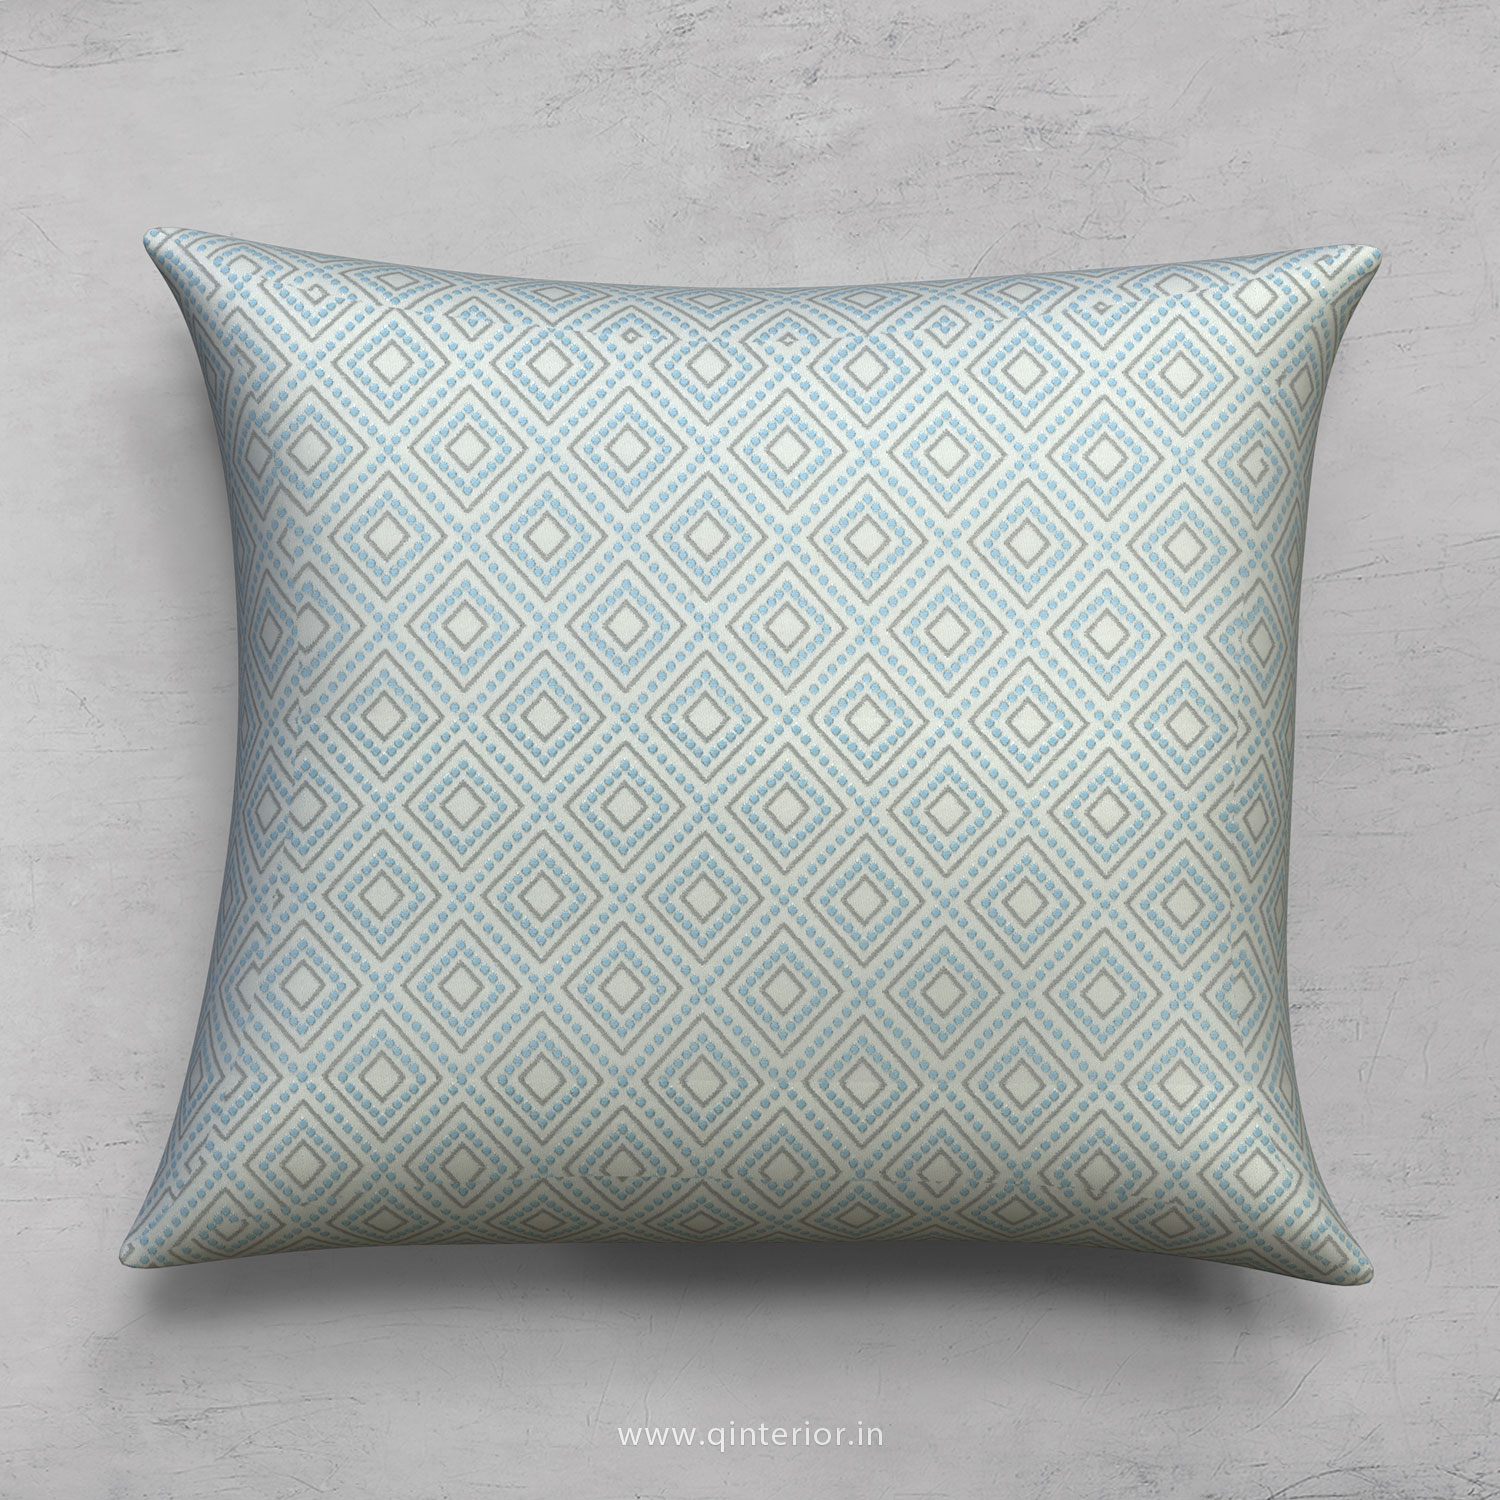 Cushion With Cushion Cover in Jacquard- CUS001 JQ27